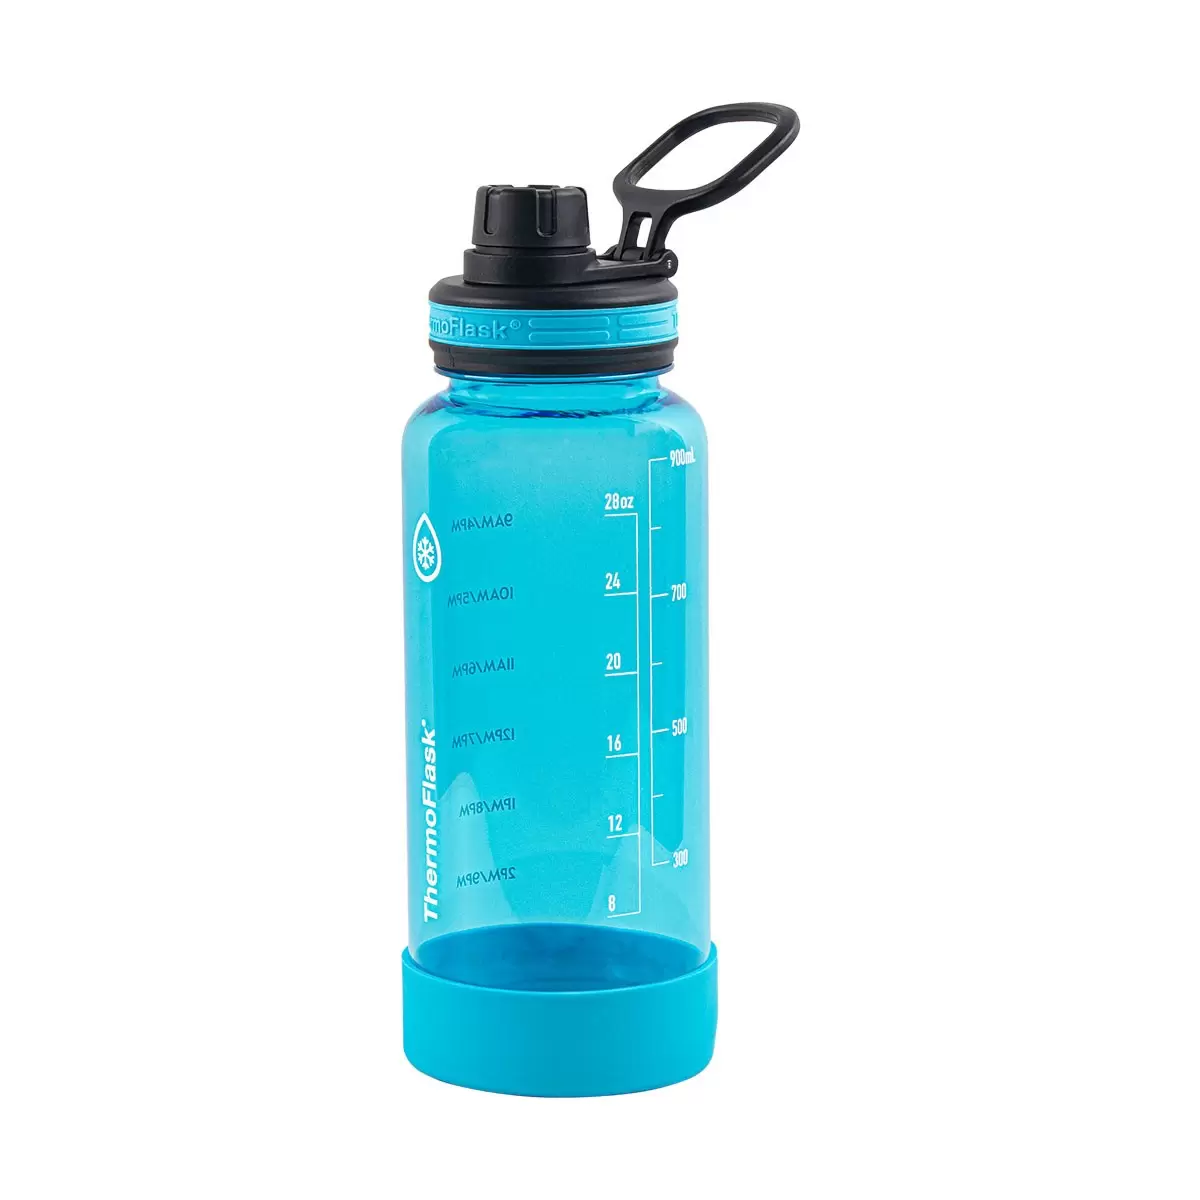 Thermoflask 隨身冷水瓶 950毫升 X 2件組 灰色 + 藍色